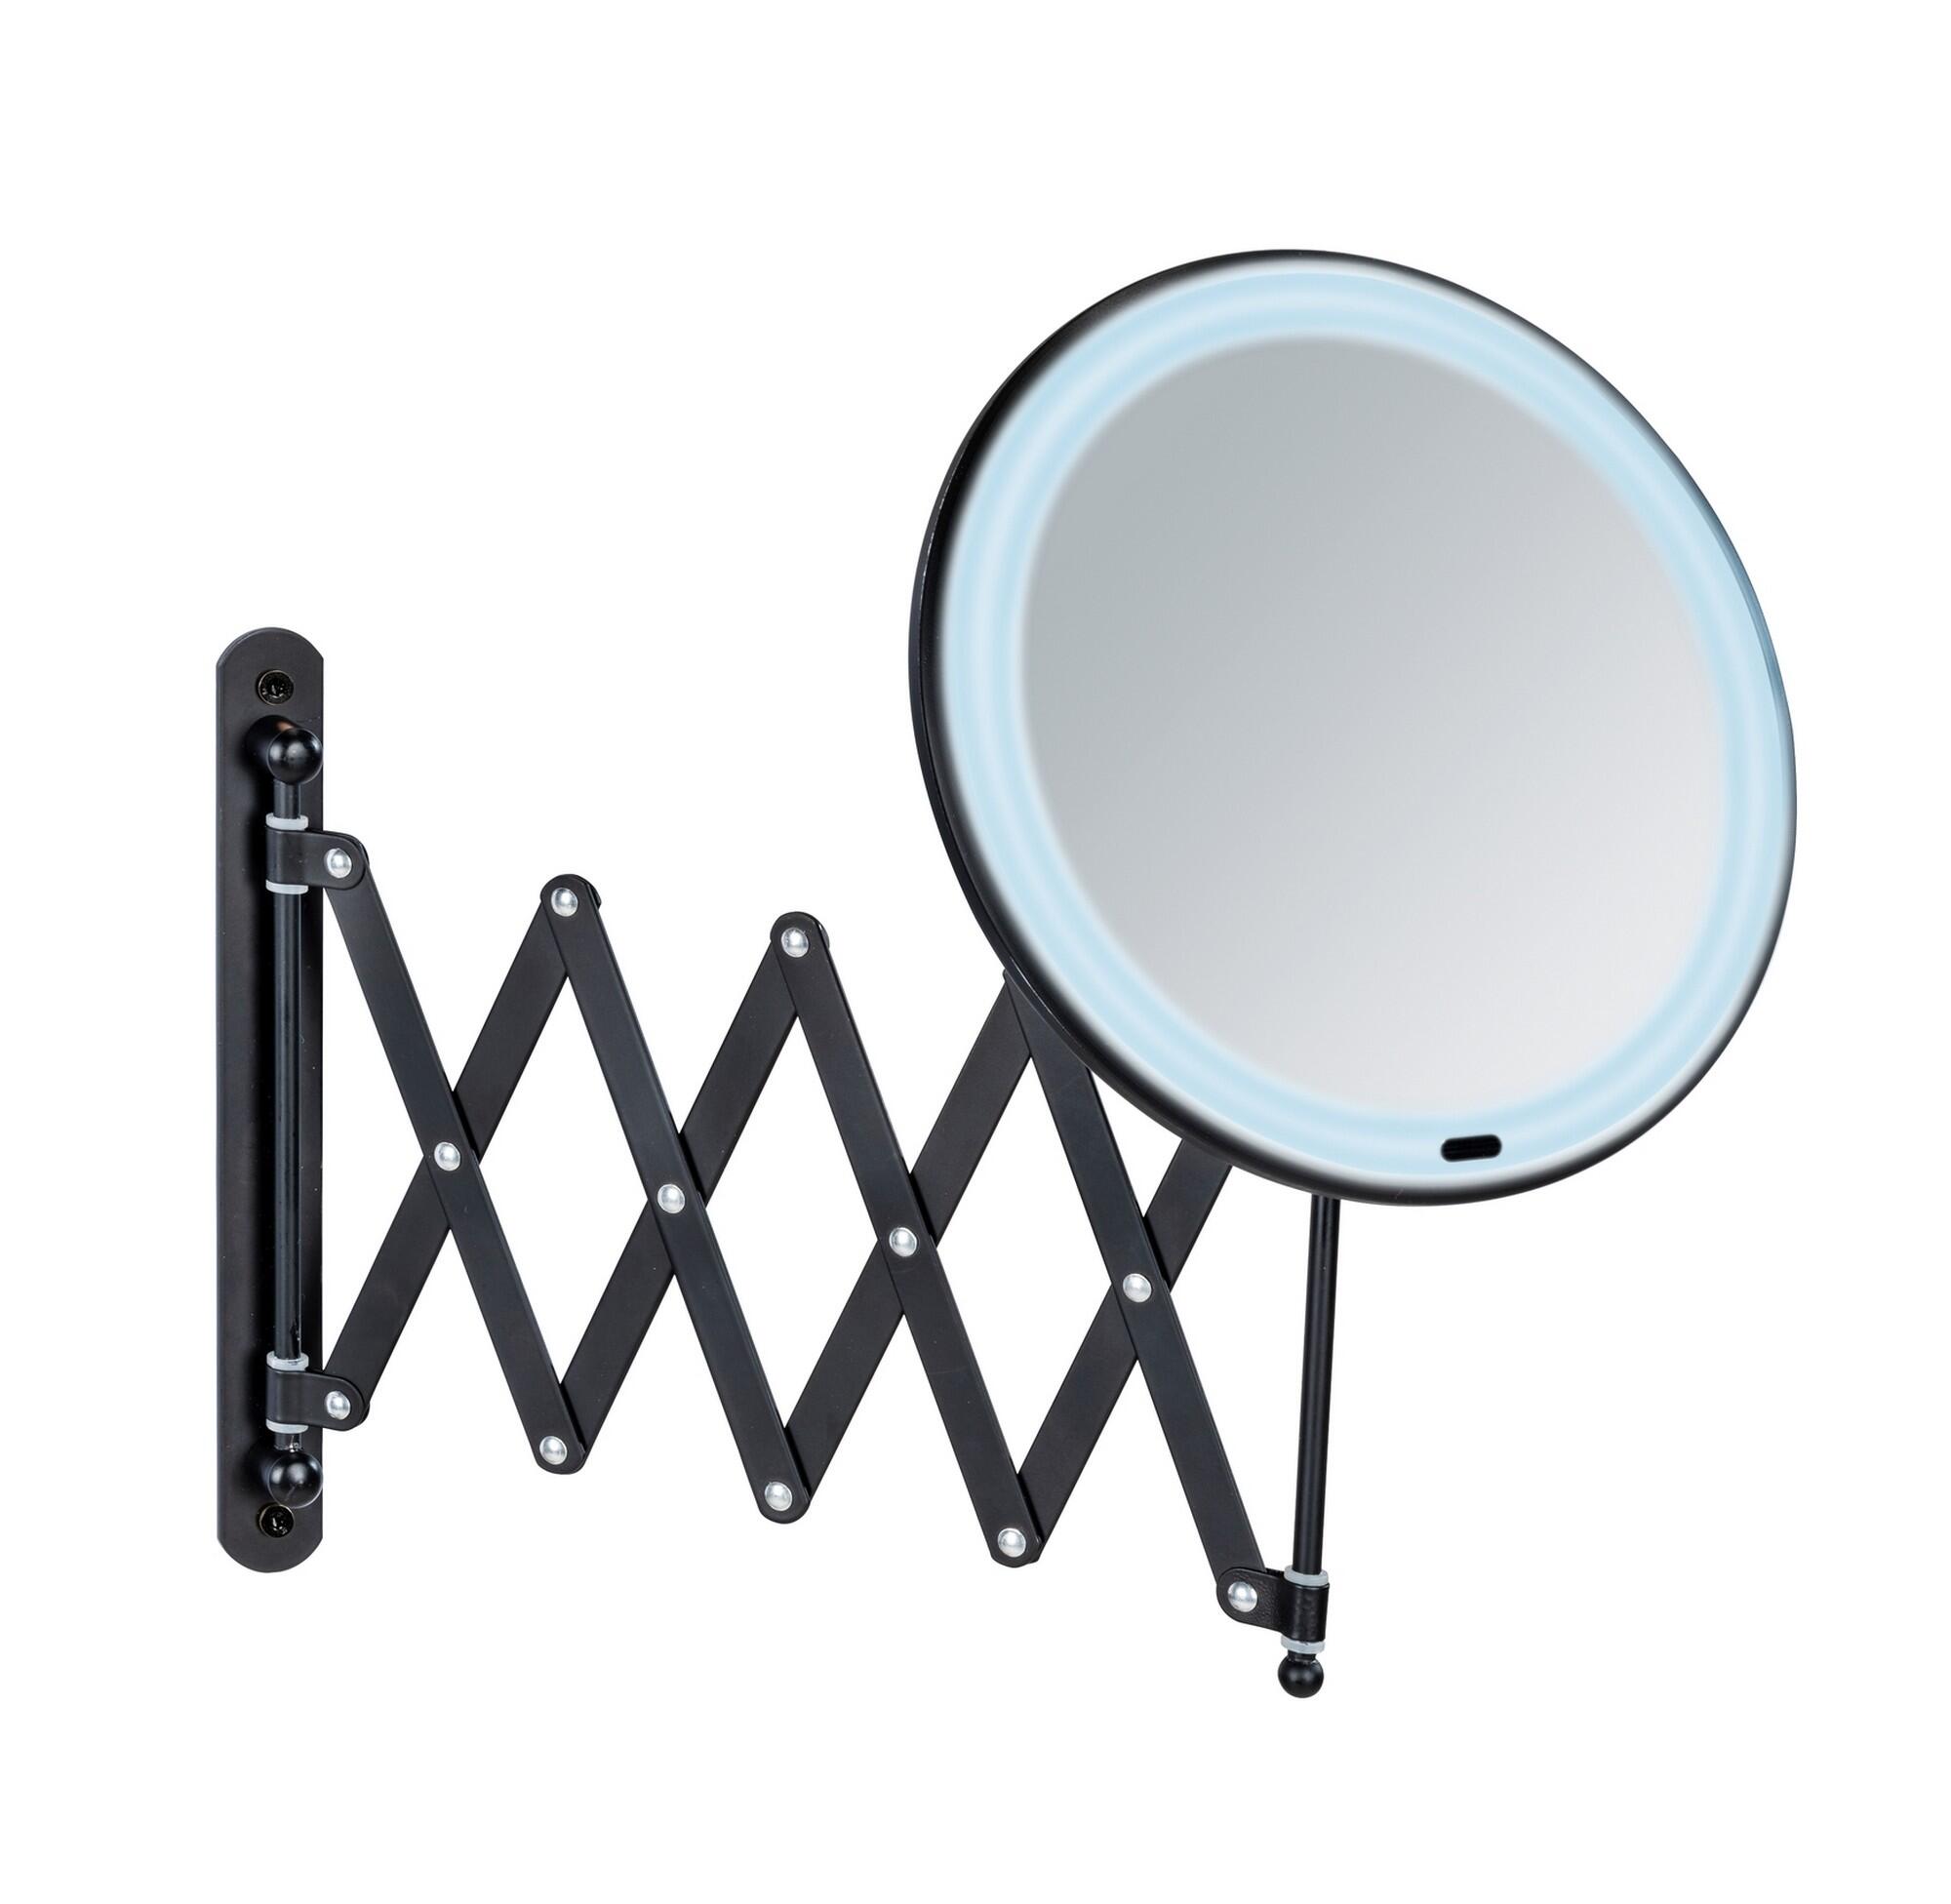 espejo aumento 5x fabricado en España